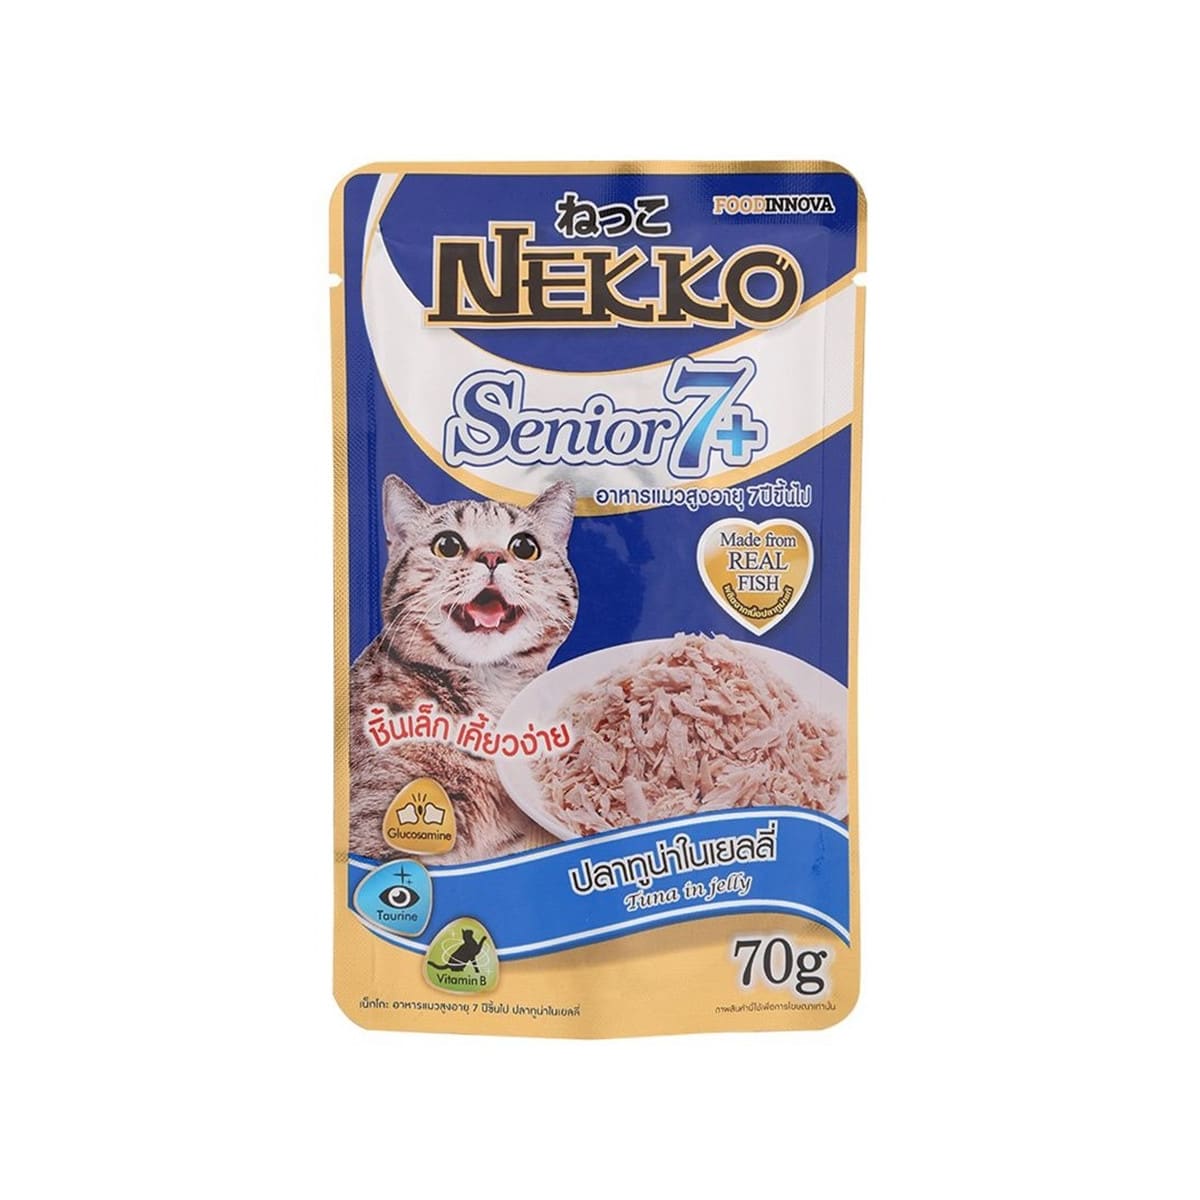 Nekko Senior 7+ อาหารเปียก สำหรับแมว รสปลาทูน่าในเยลลี่ 70 g_1